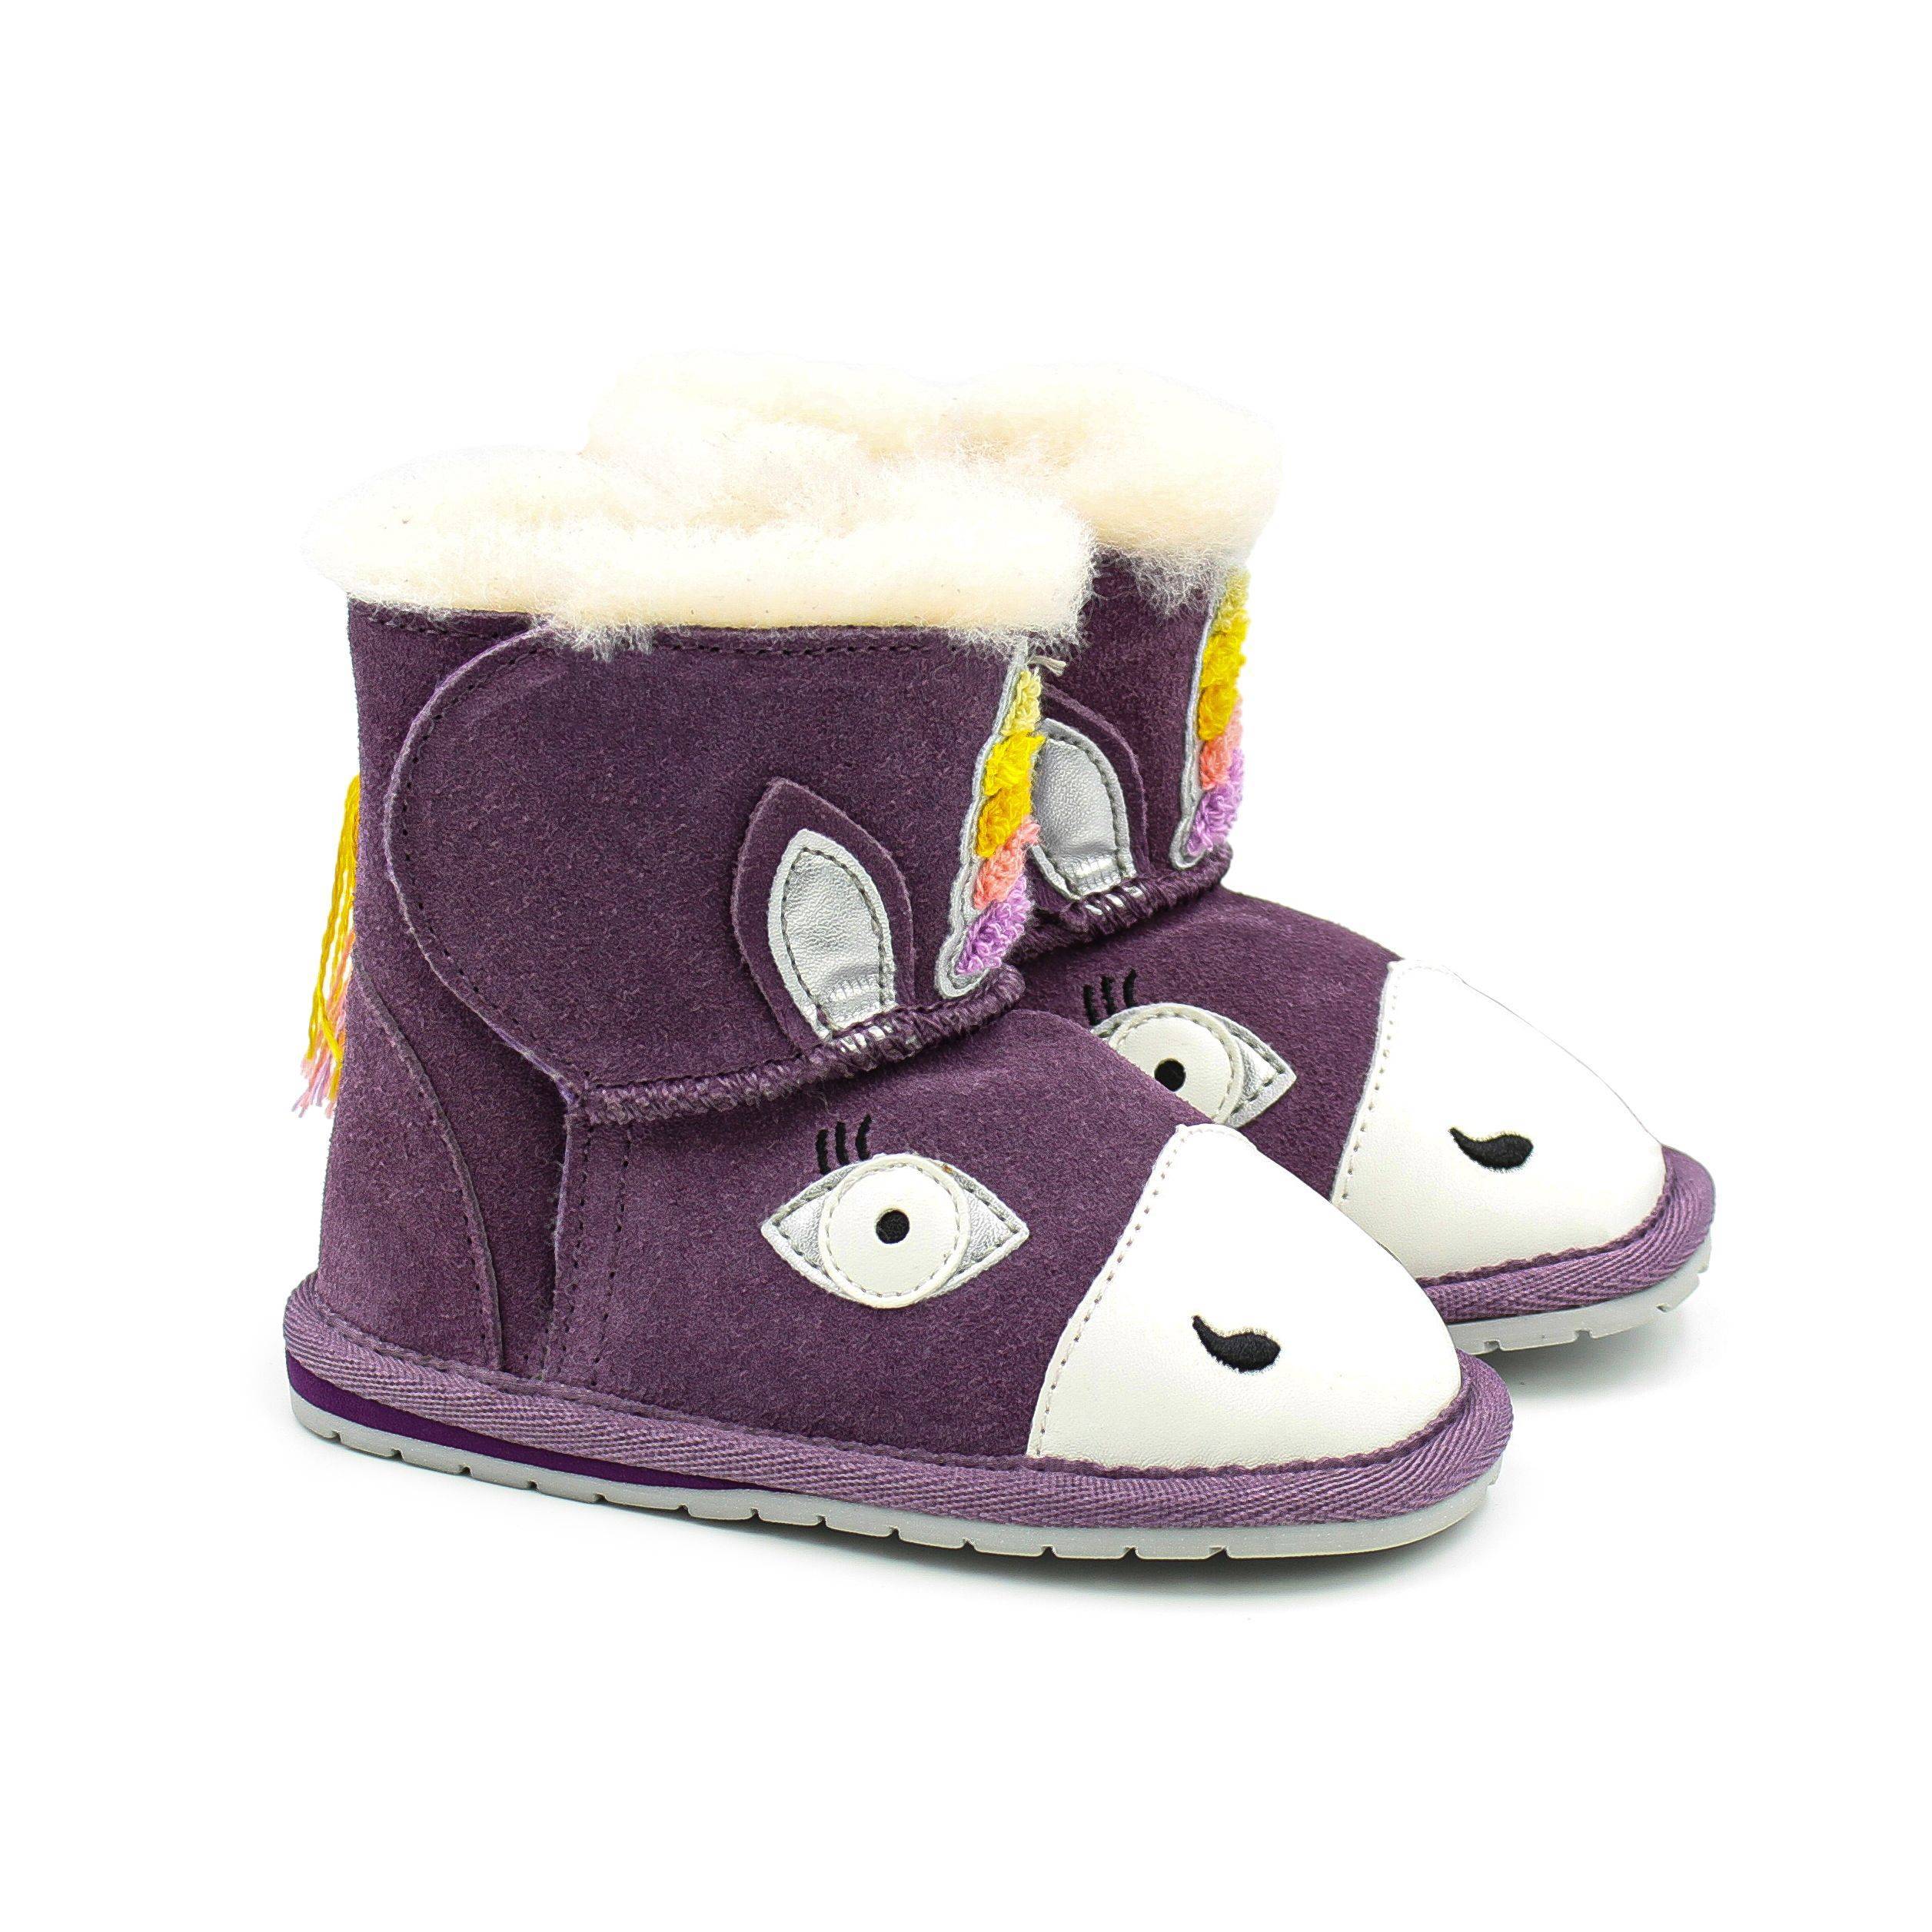 Детские ботинки из овчины (угги) EMU Australia(Magical Unicorn Walker B12409), фиолетовые, цвет фиолетовый, размер 22 - фото 9